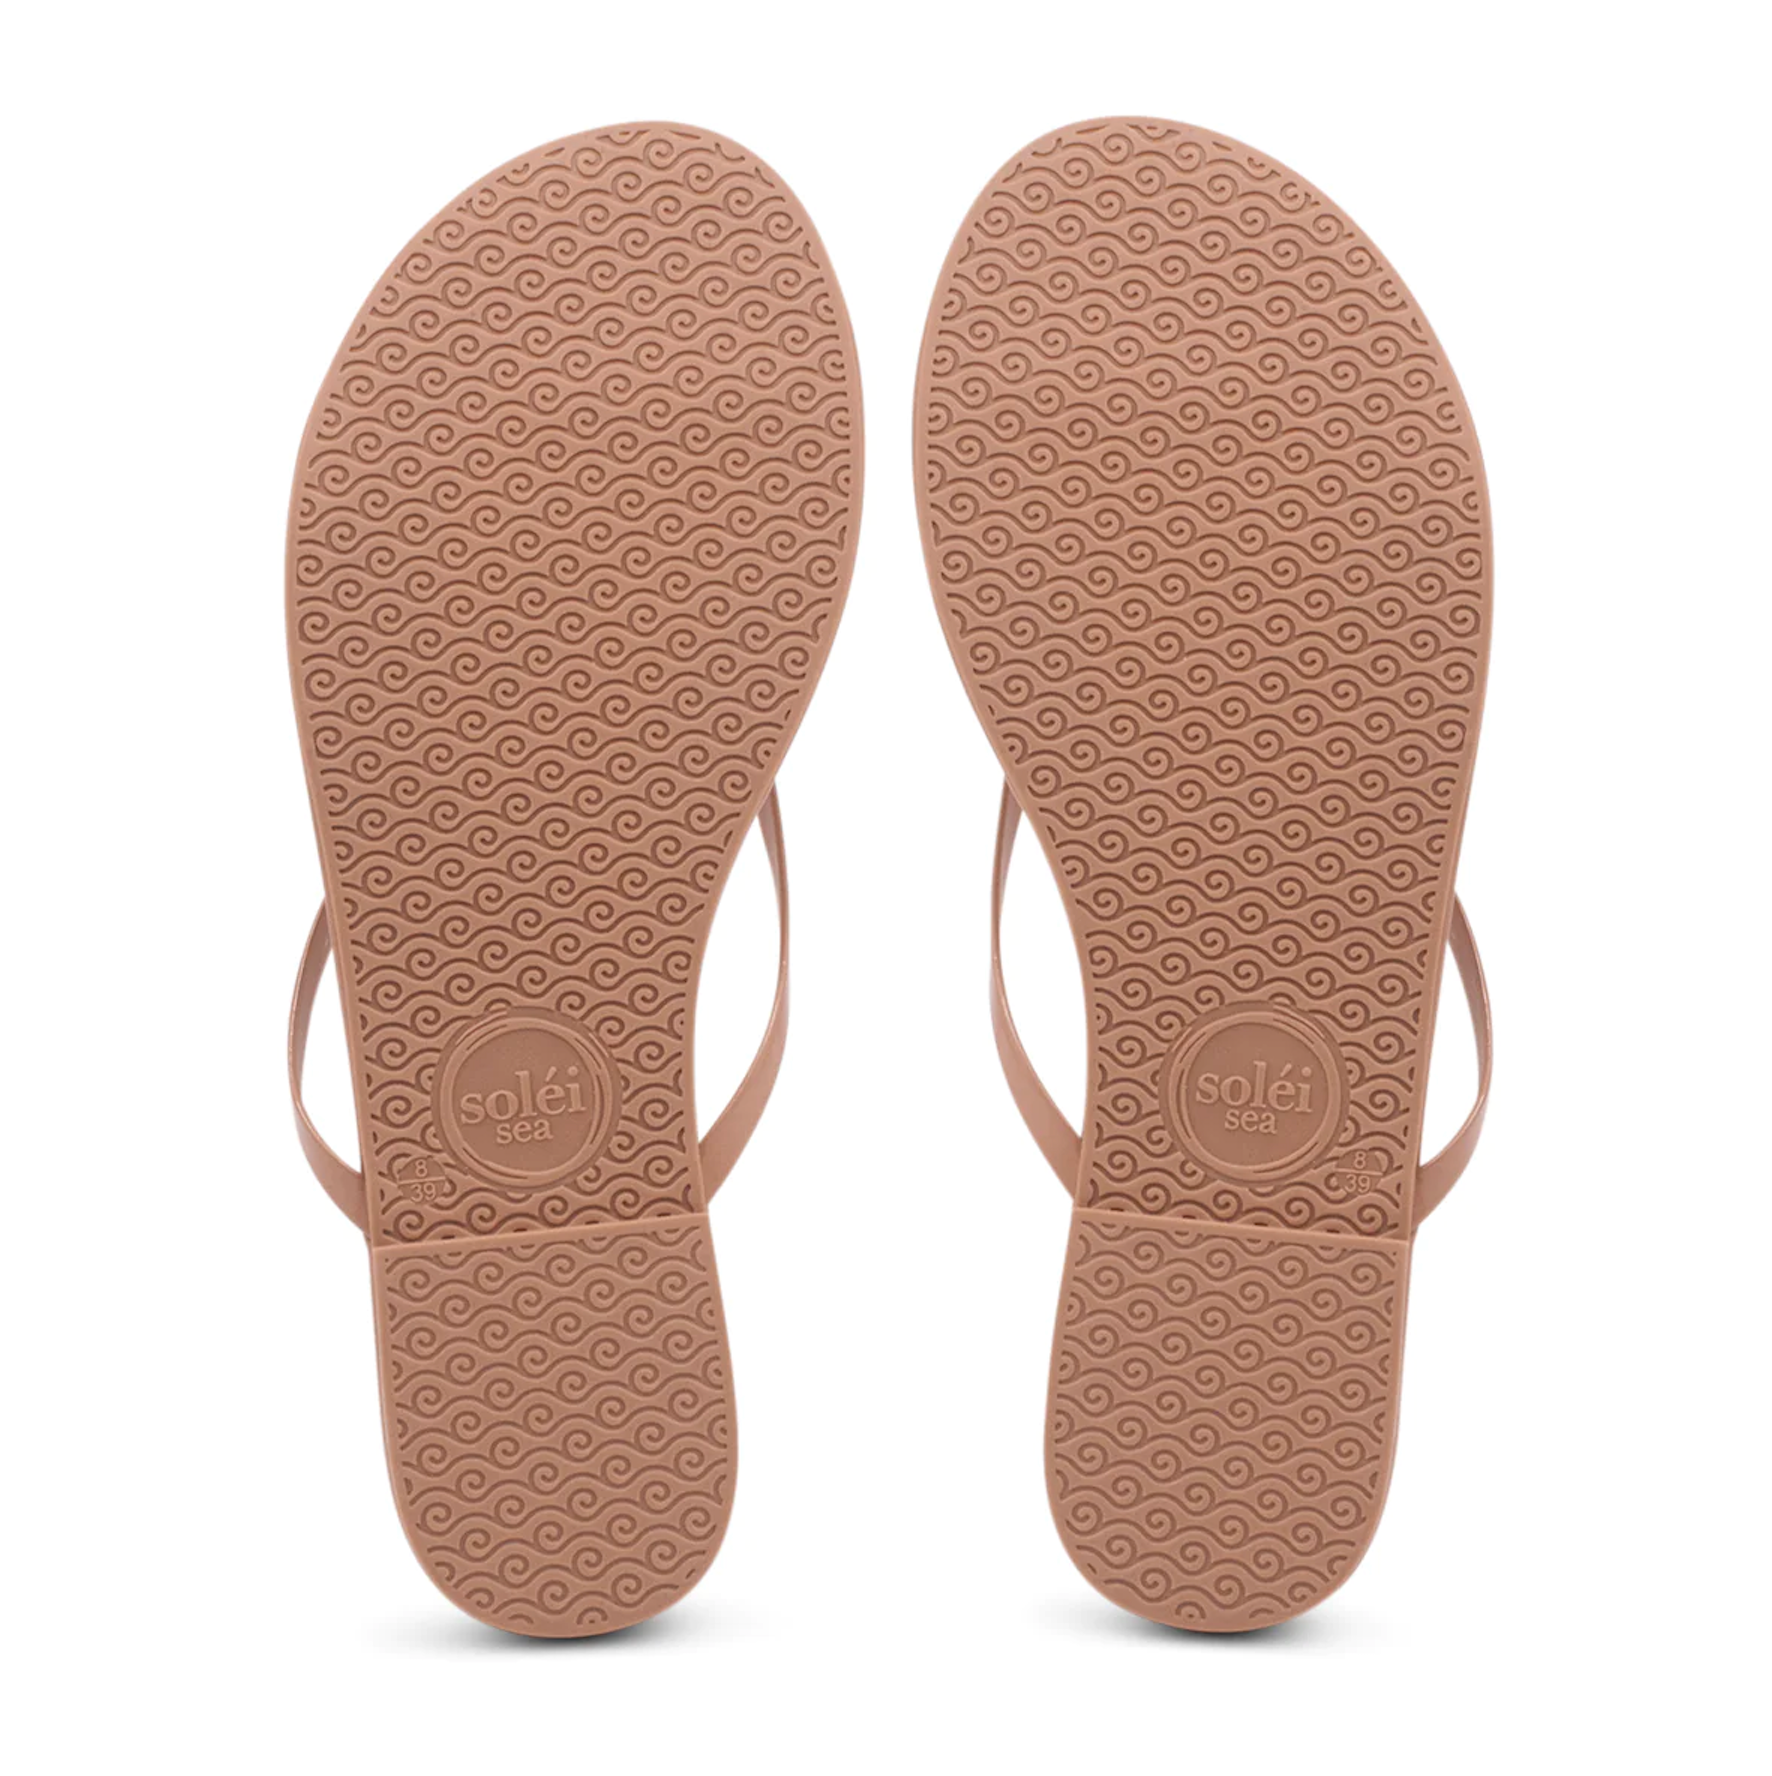 Solei Sea Indie Nude Patent Sandal